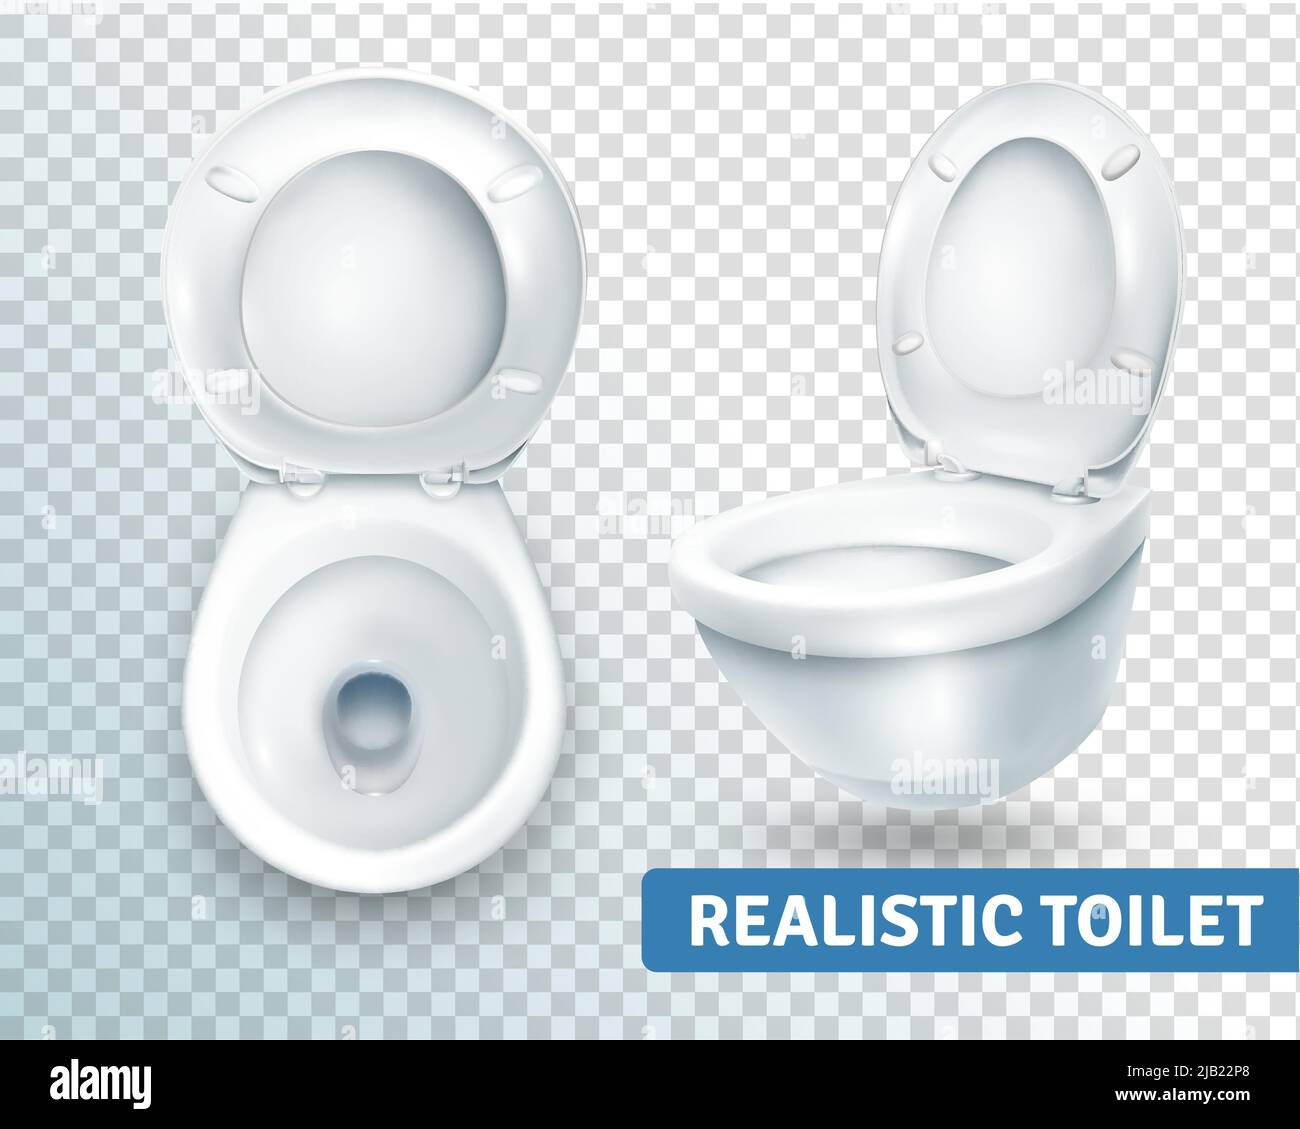 Realistische Toilette transparent Set mit zwei isolierten Bildern der weißen Toilettenschüssel Ansicht aus verschiedenen Winkeln Vektor-Illustration Stock Vektor